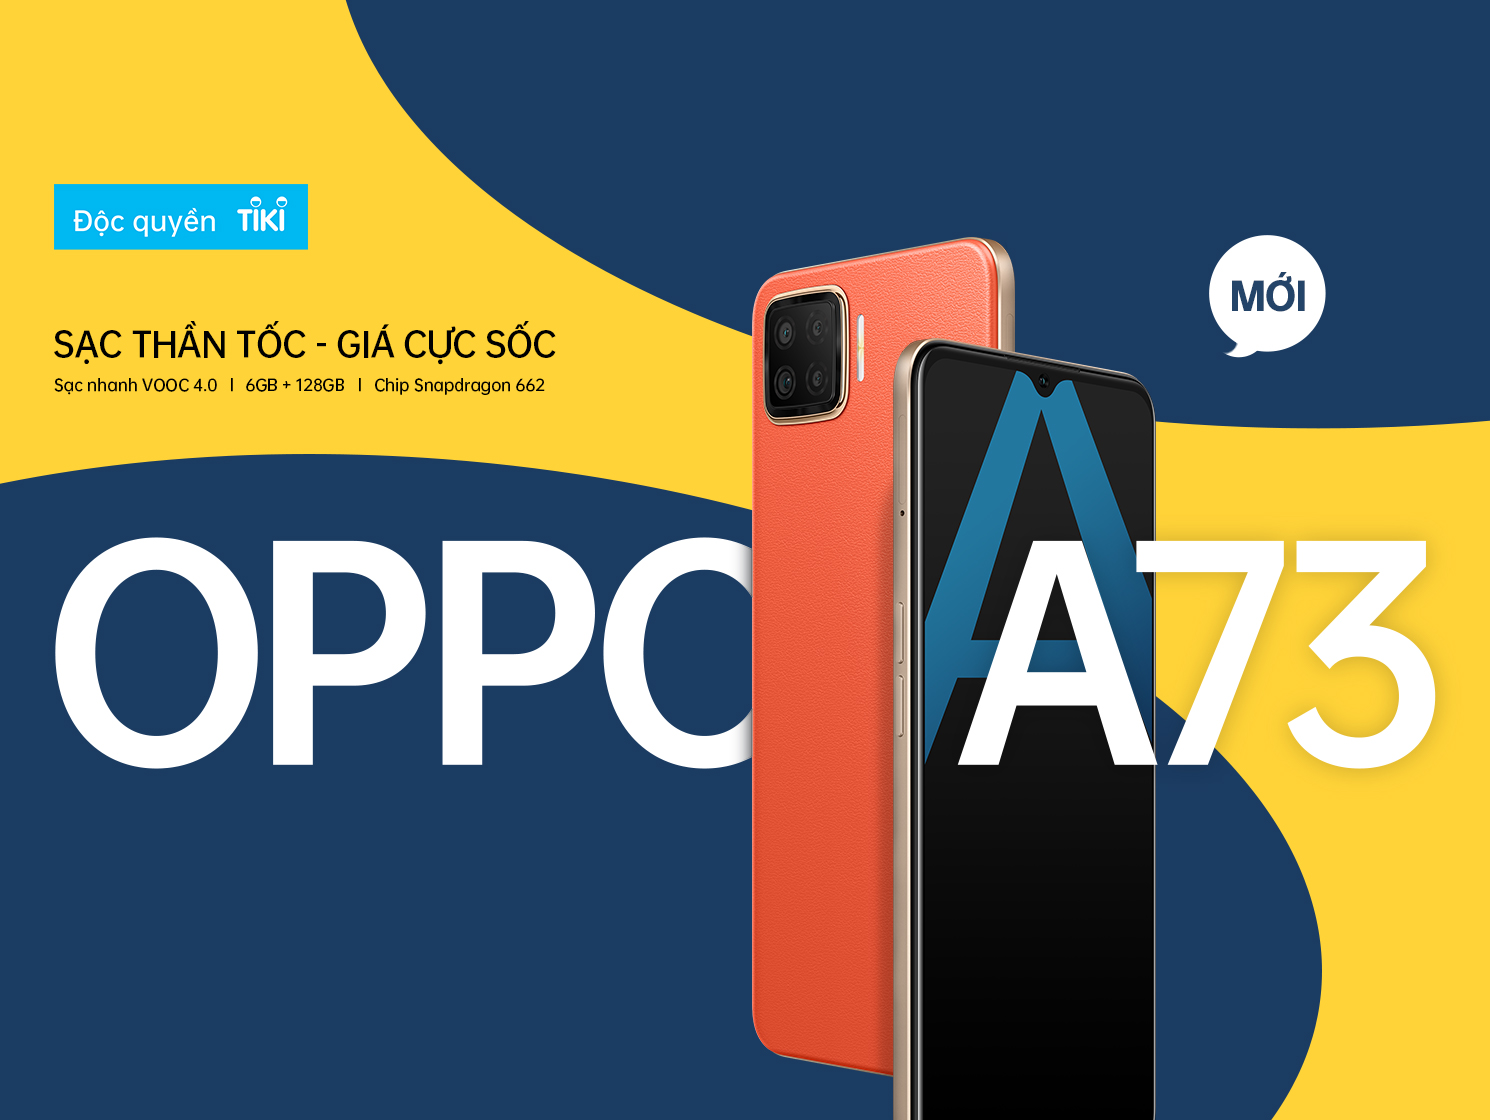 OPPO A73 chính là sự lựa chọn hàng đầu cho người yêu công nghệ. Với thiết kế đẹp mắt, cực kỳ sang trọng và tính năng ưu việt, OPPO A73 đem đến cho bạn trải nghiệm hoàn hảo nhất. Nhấn play và bắt đầu khám phá chiếc điện thoại này ngay nhé!